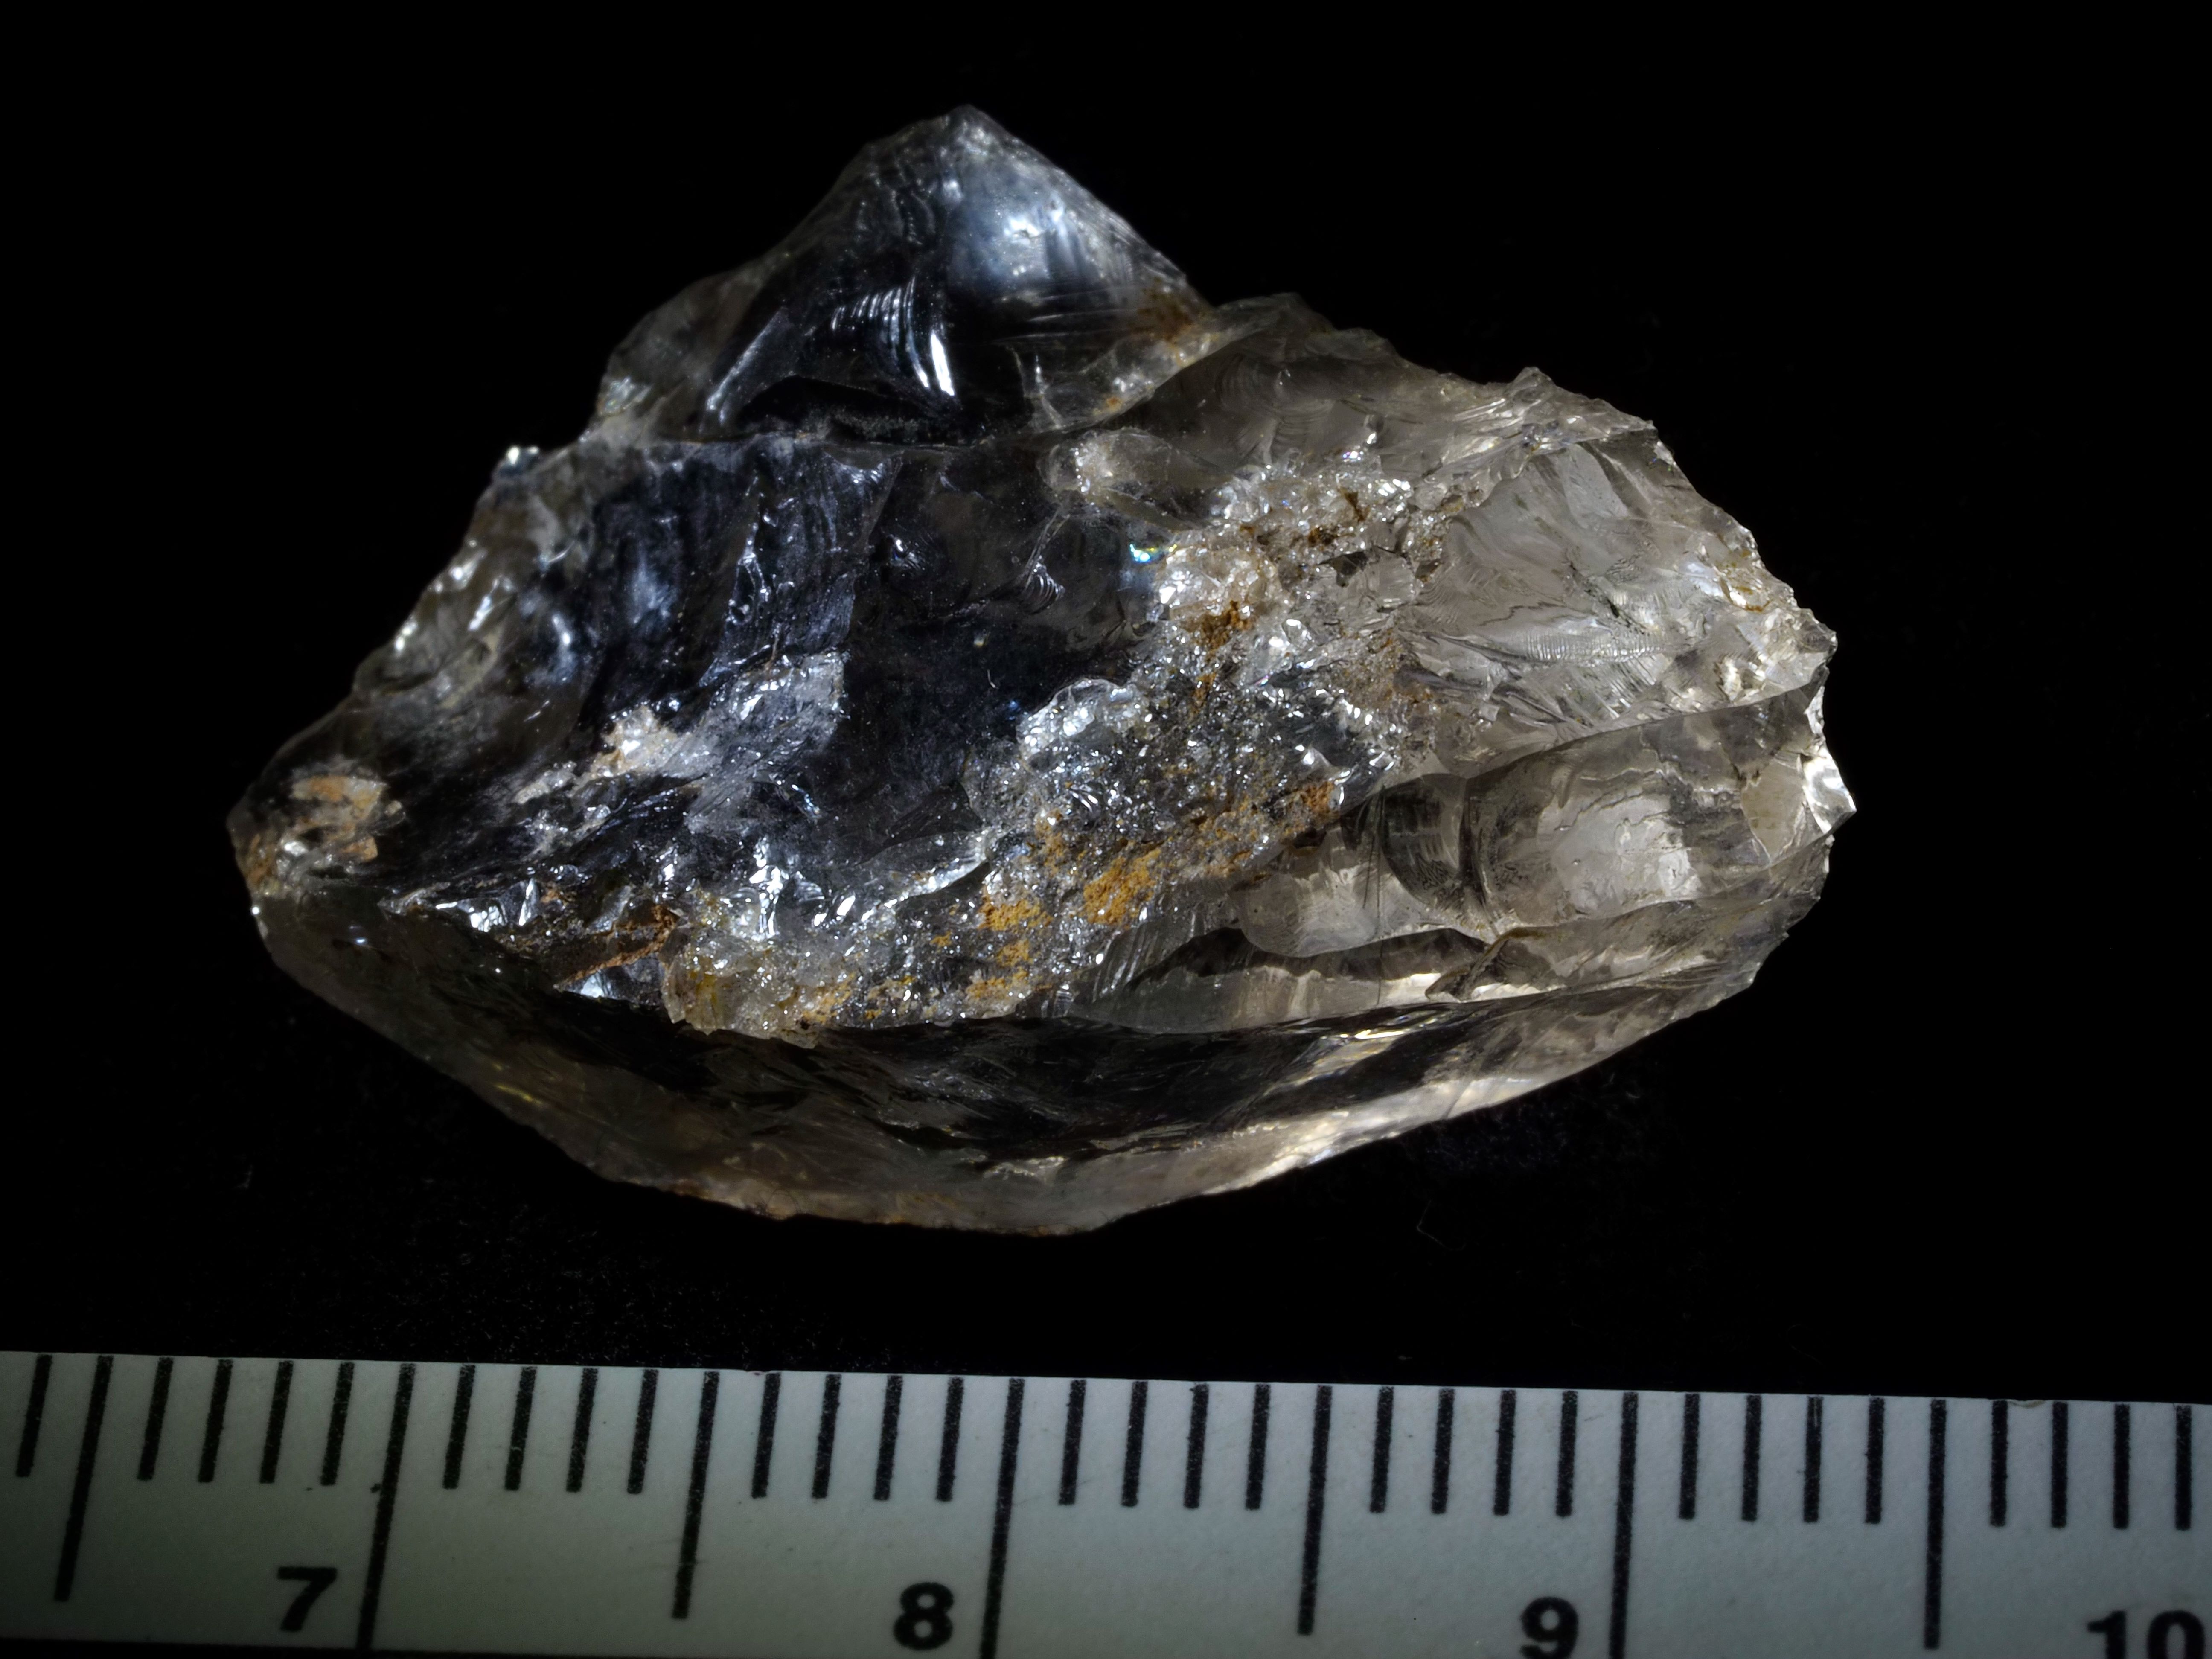 Núcleo de laminillas en cristal de cuarzo de la unidad del Paleolítico superior inicial del abrigo de la Malia. Créditos: Javier Trueba-MSF